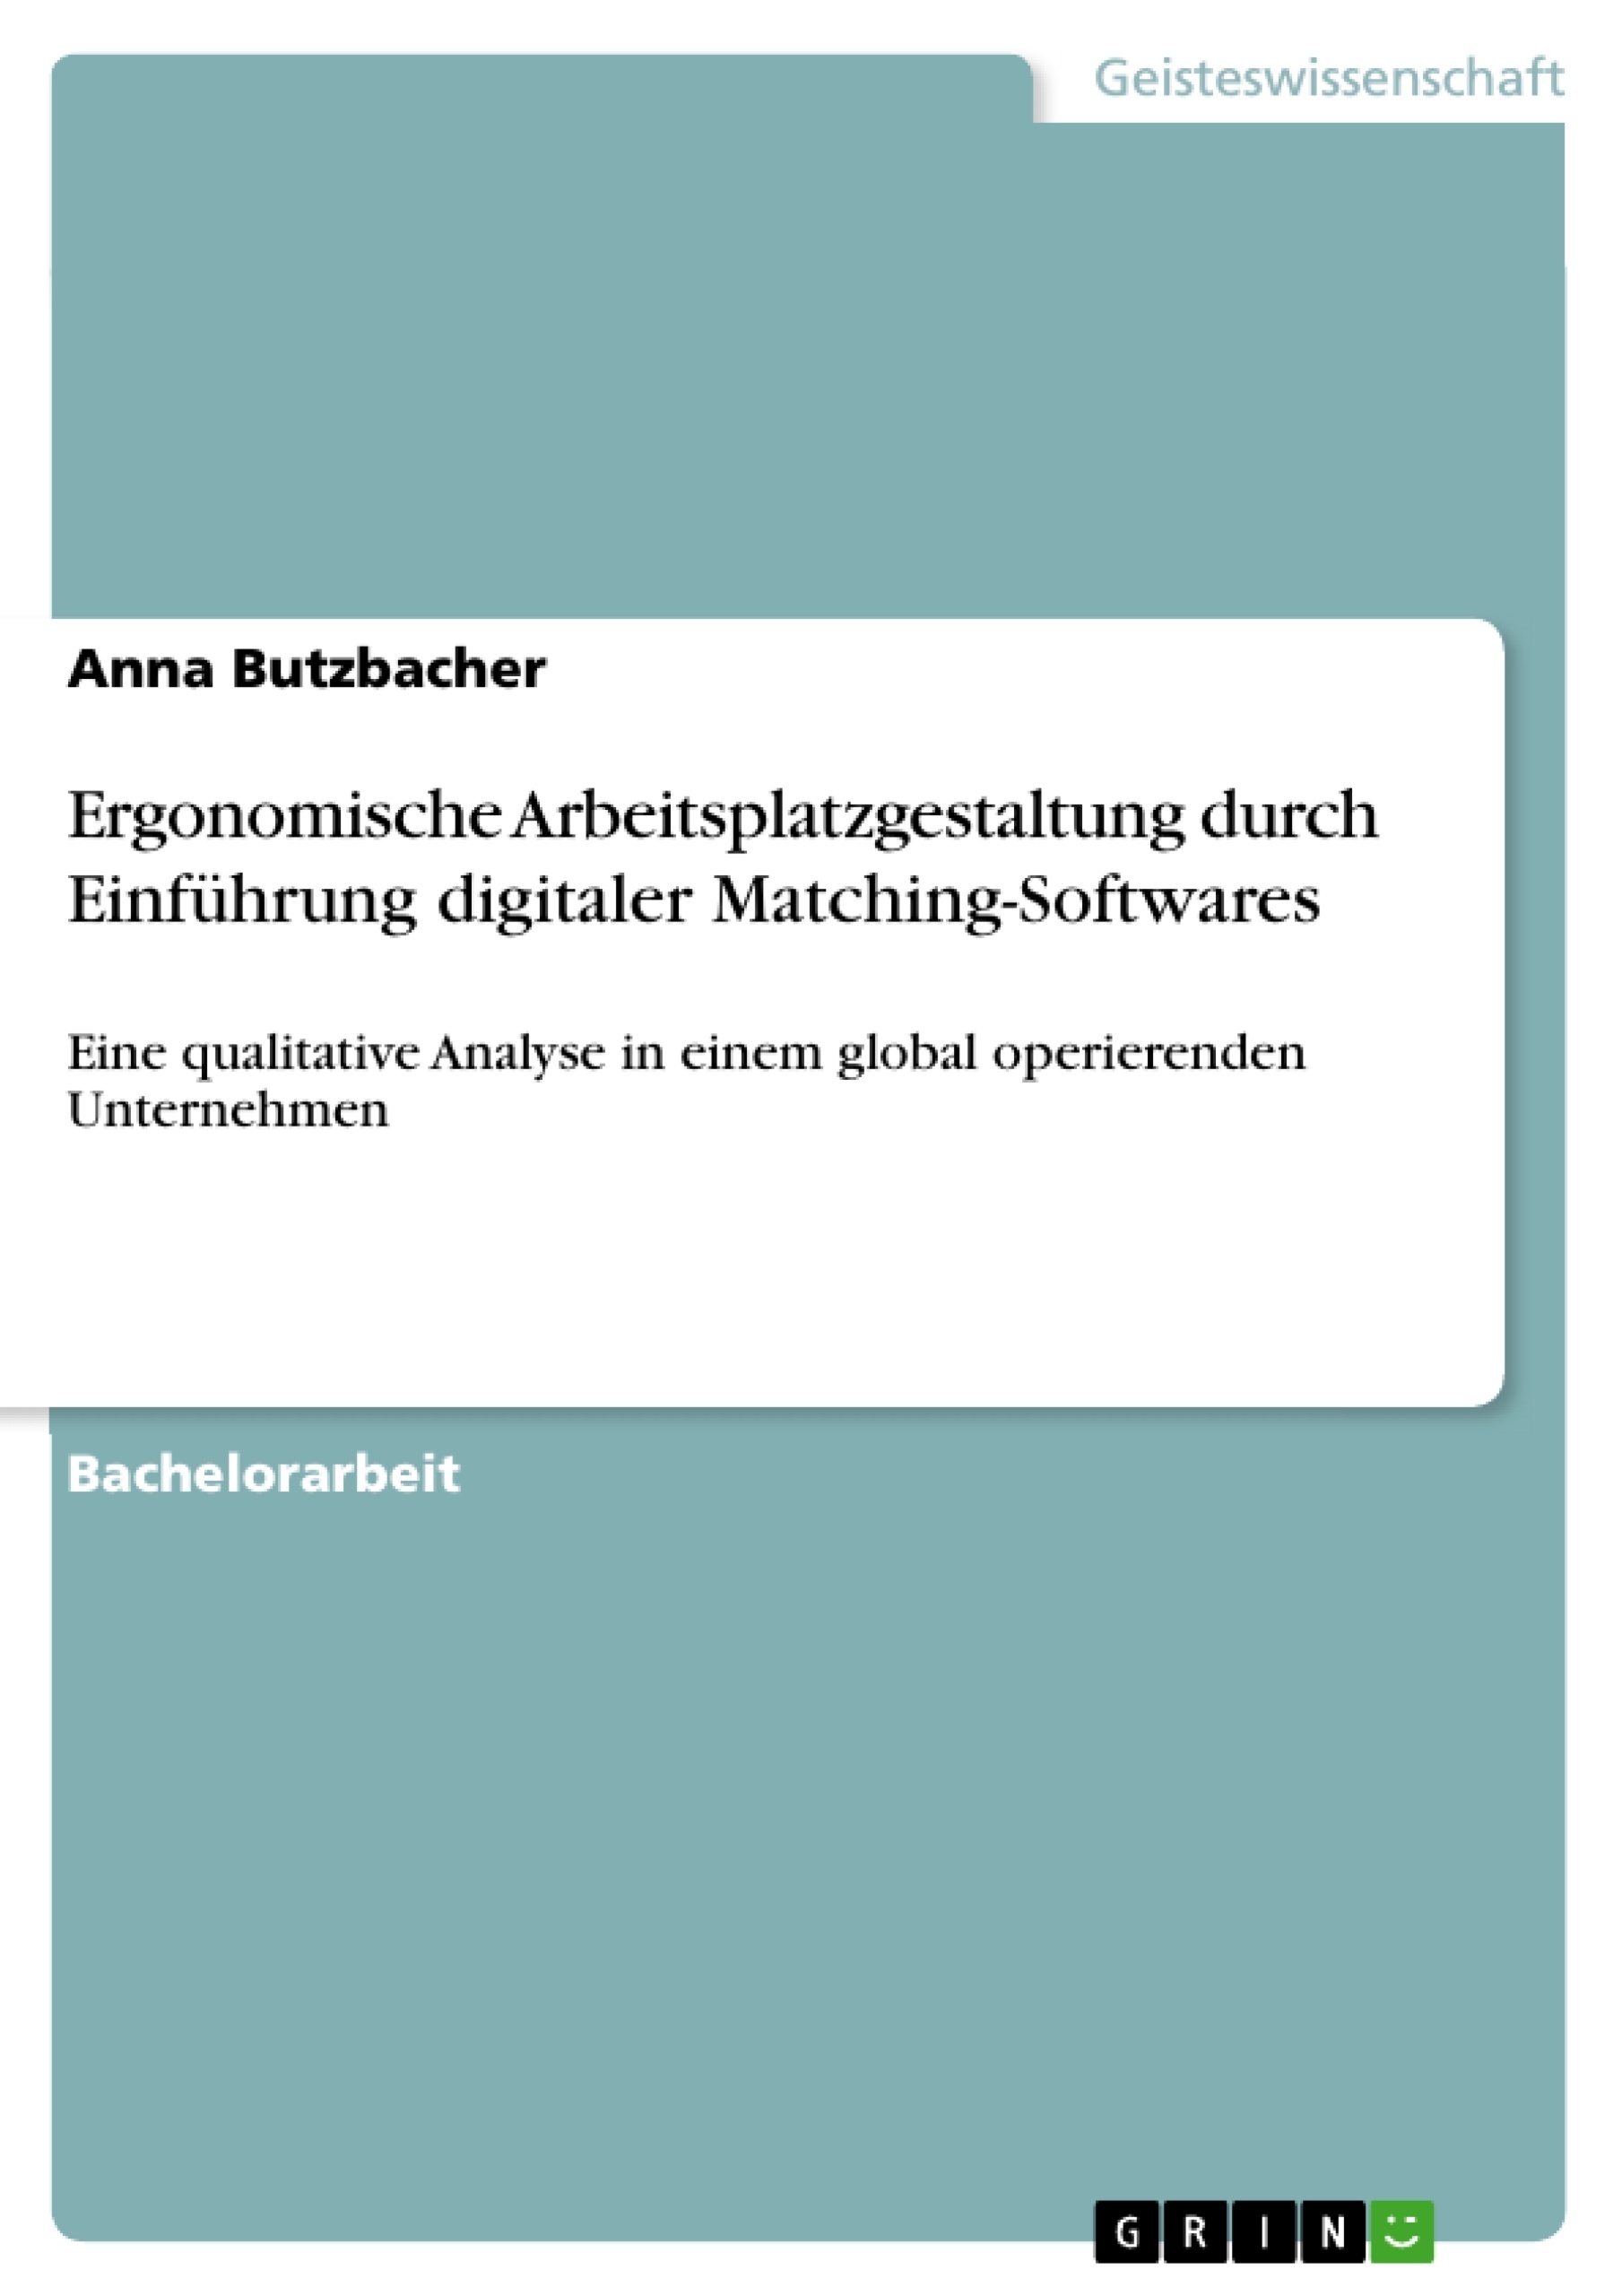 Title: Ergonomische Arbeitsplatzgestaltung durch Einführung digitaler Matching-Softwares